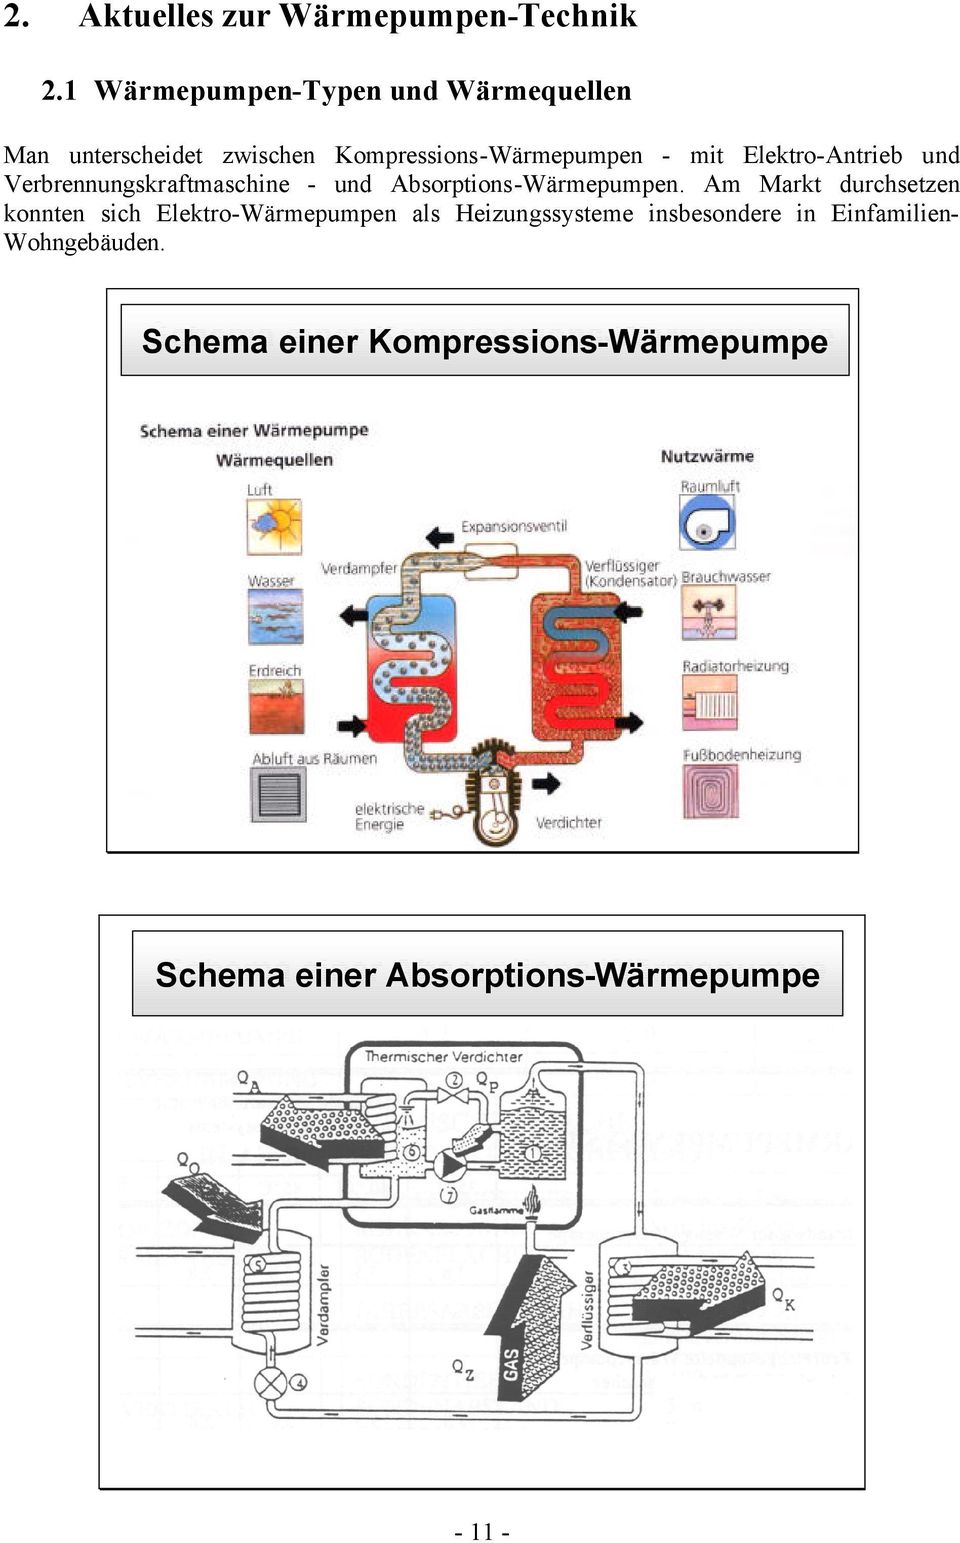 Verbrennungskraftmaschine - und Absorptions-Wärmepumpen.